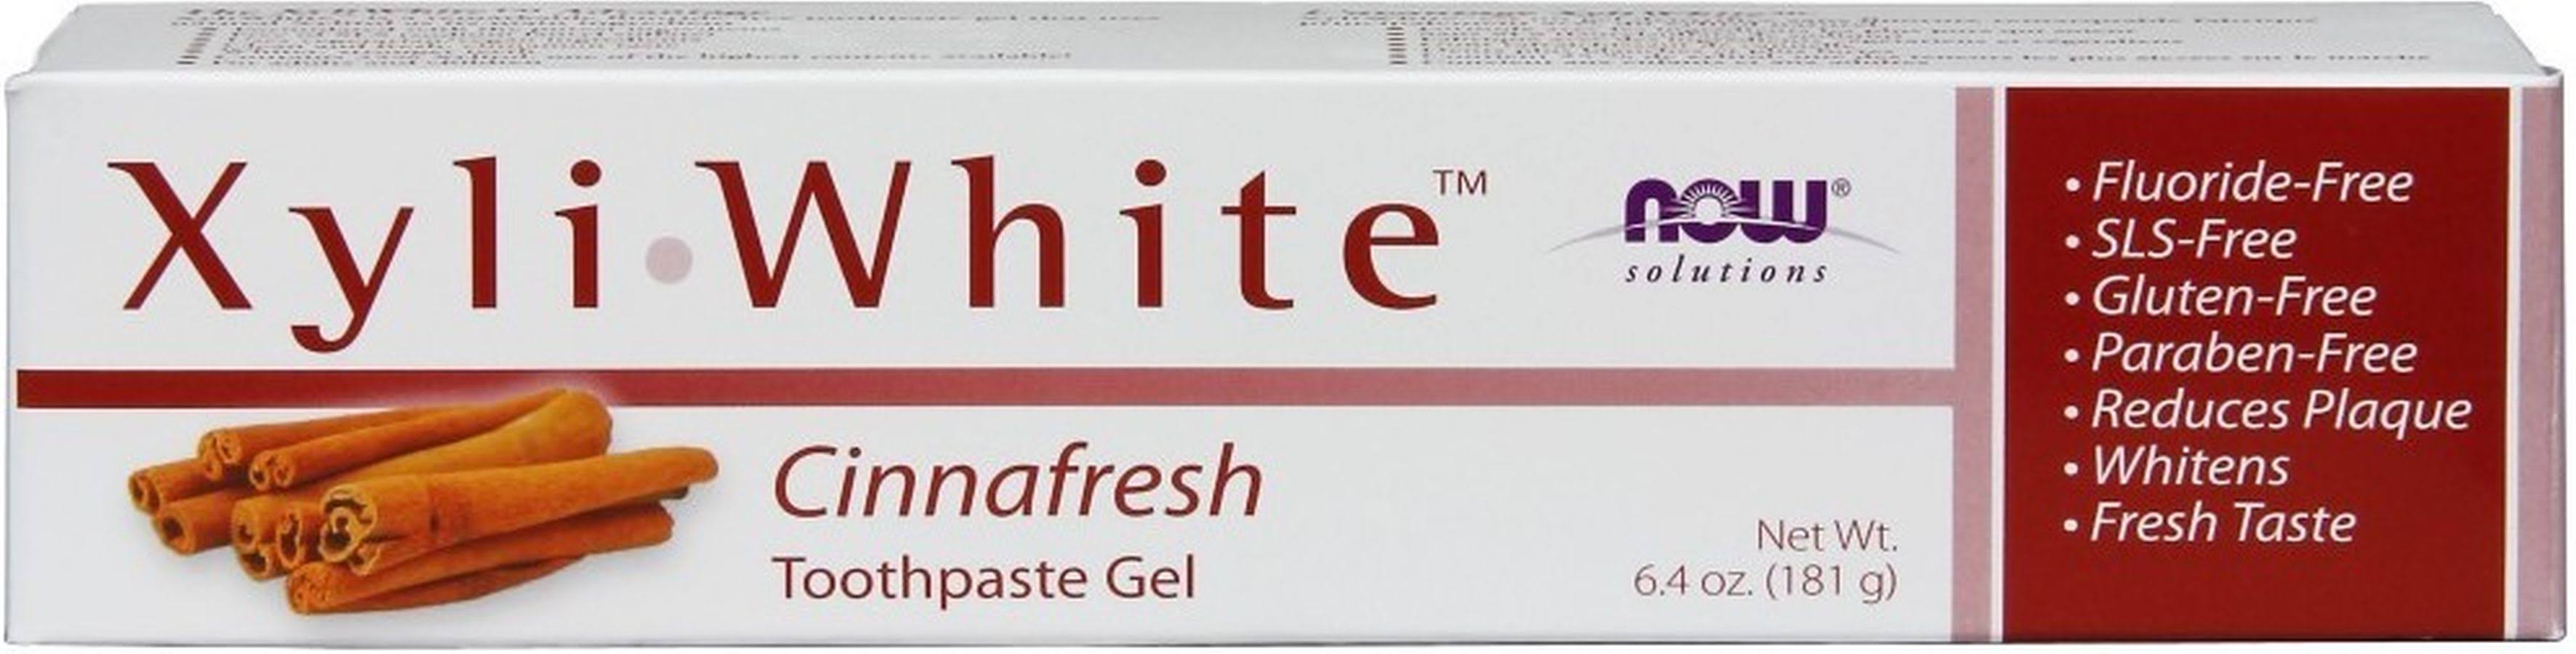 Now Foods Xyliwhite Toothpaste Gel - Cinnafresh, 6.4oz